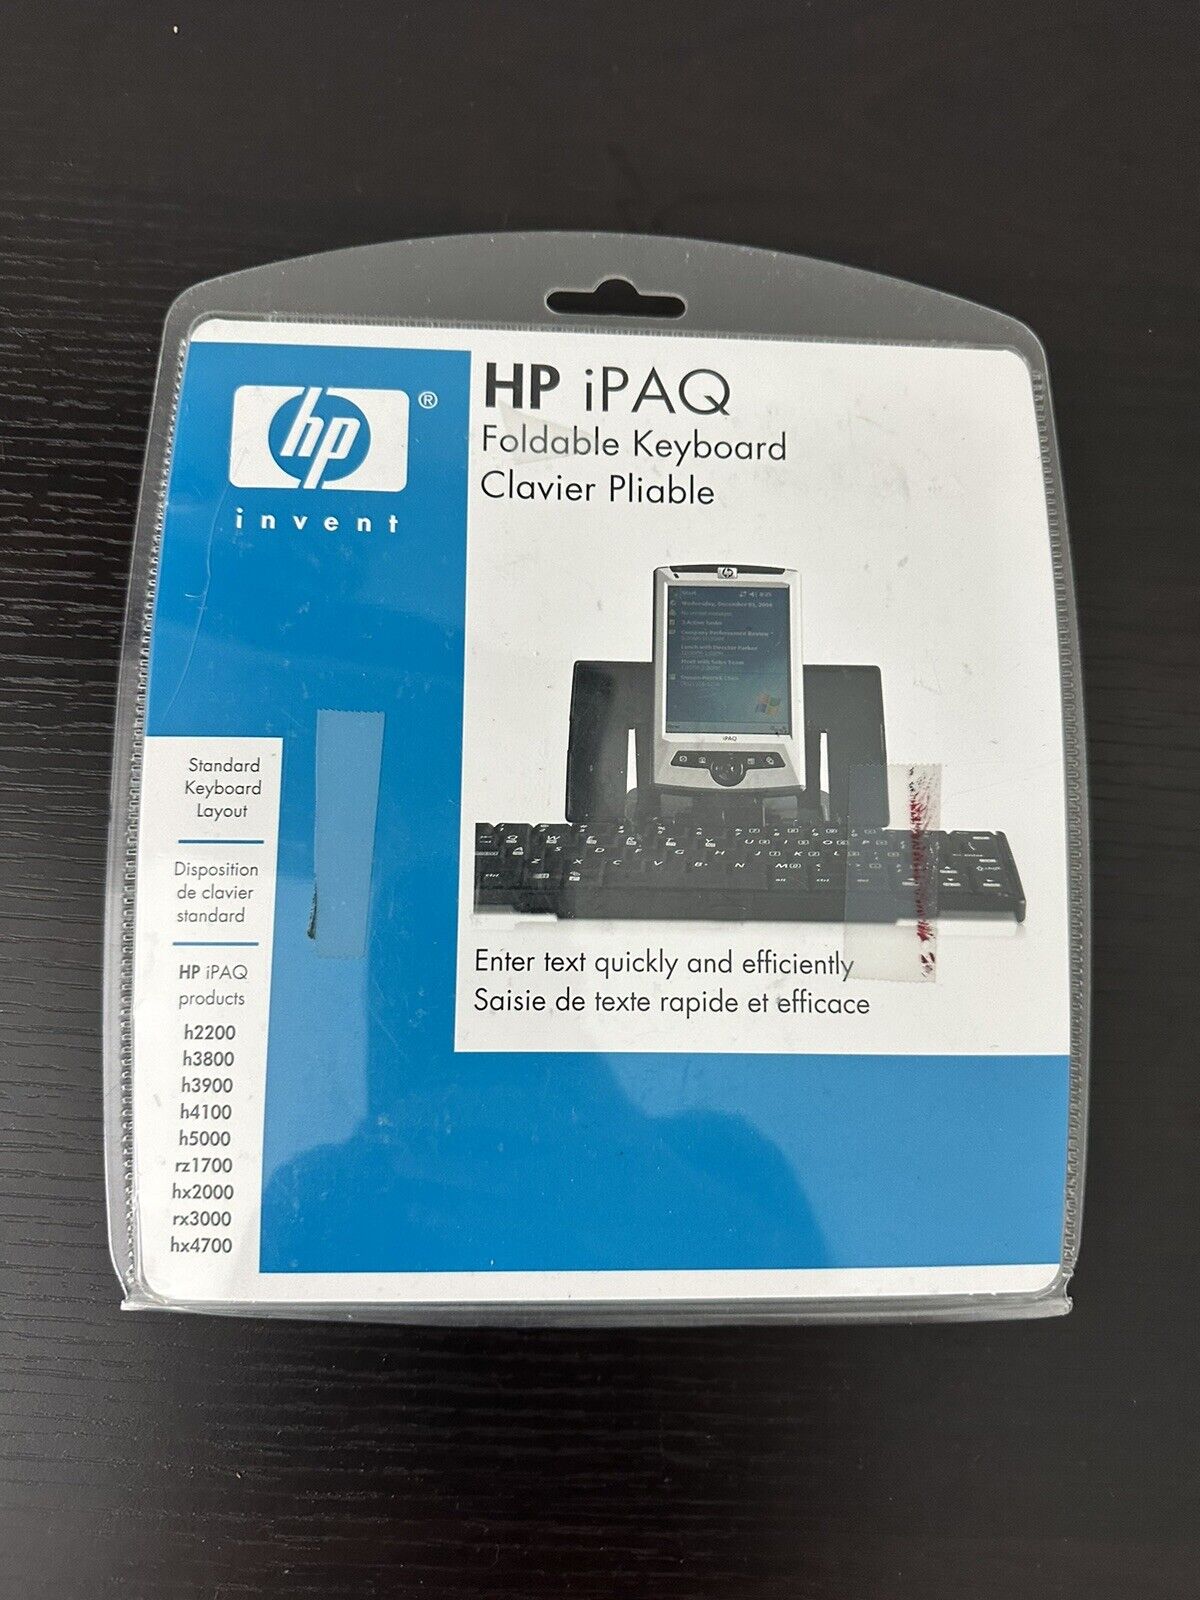 HP Ipaq Pocket PC Models h5000, h3900, h2200 Series Foldable Keyboard New